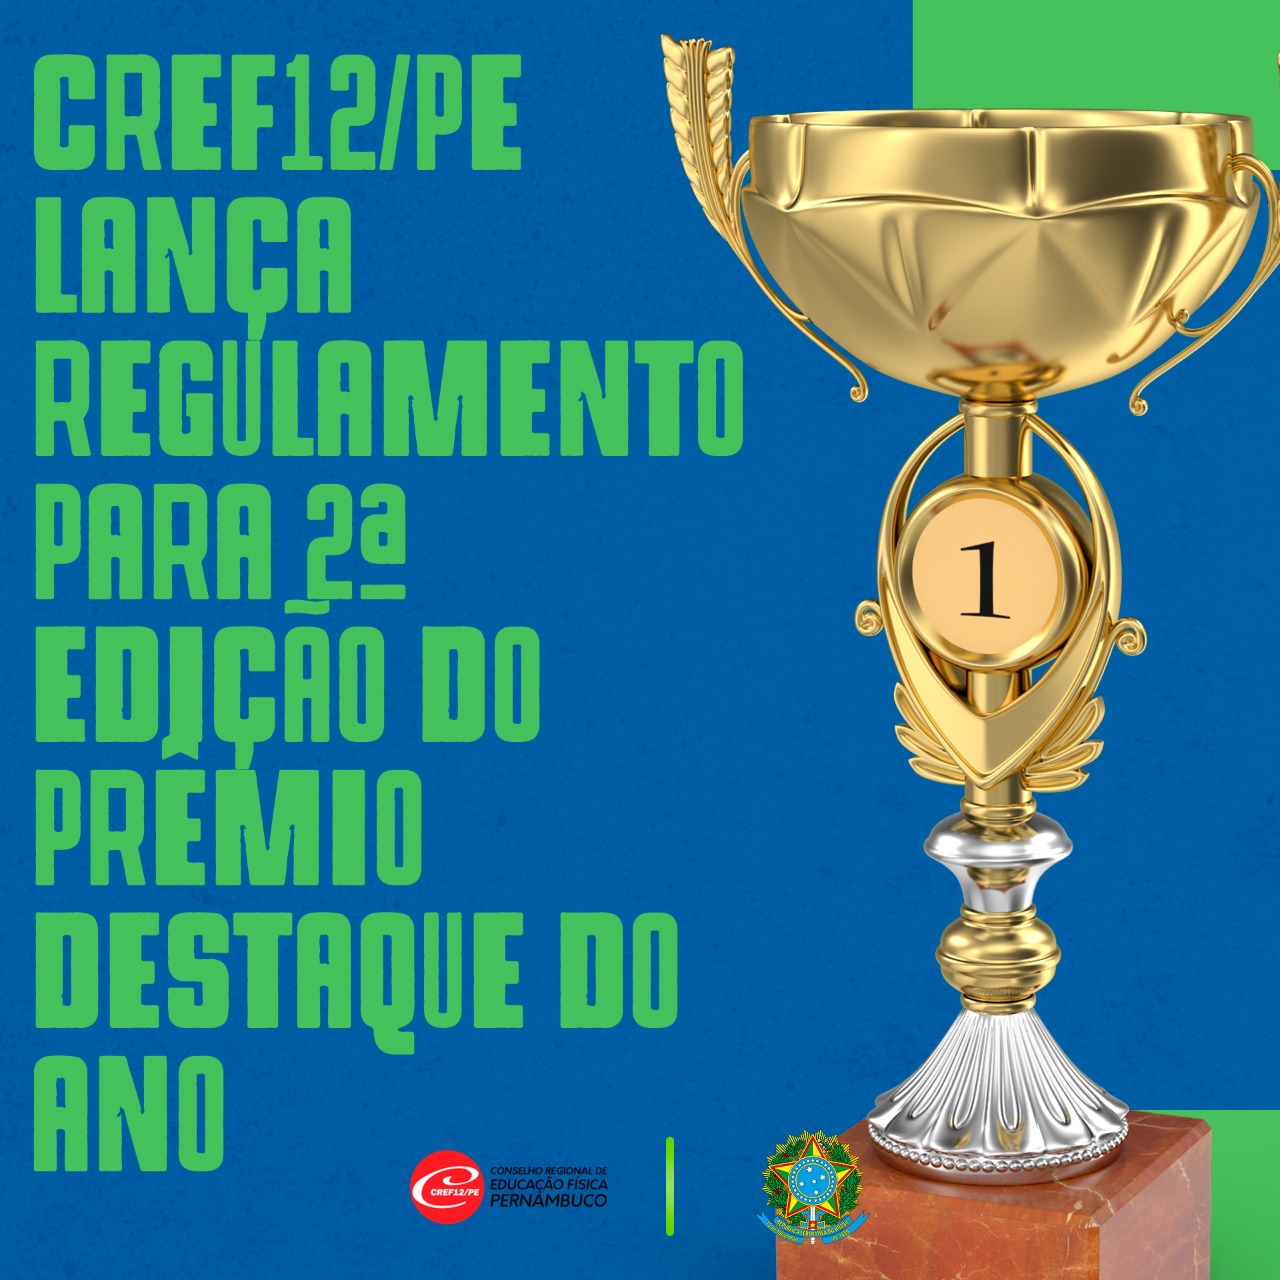 You are currently viewing CREF12/PE lança regulamento para 2ª edição do Prêmio Destaque do Ano